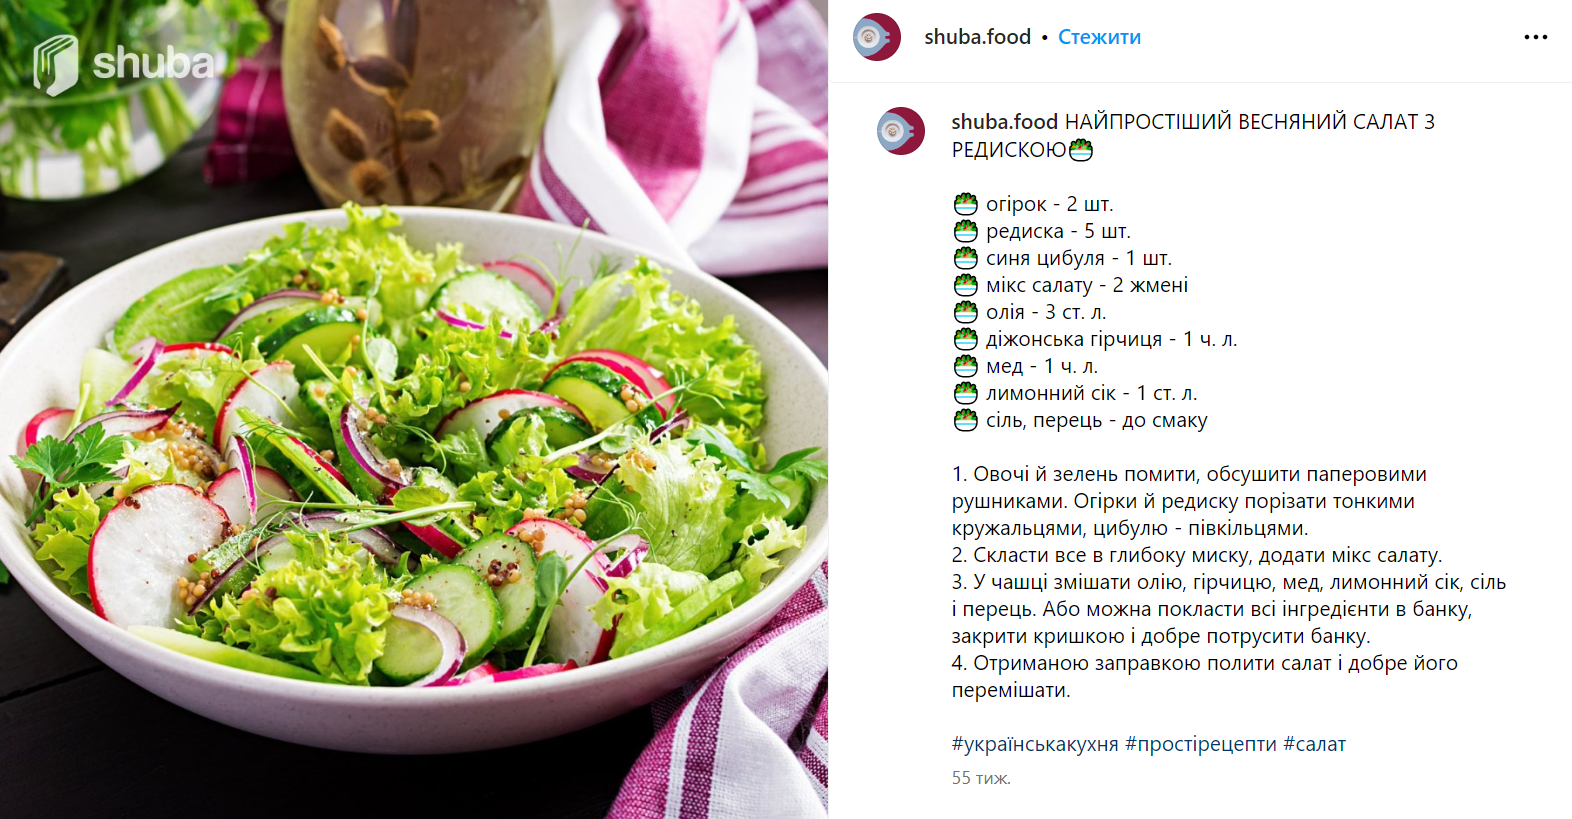 Легкий весенний салат из свежих овощей и зелени: чем заправить